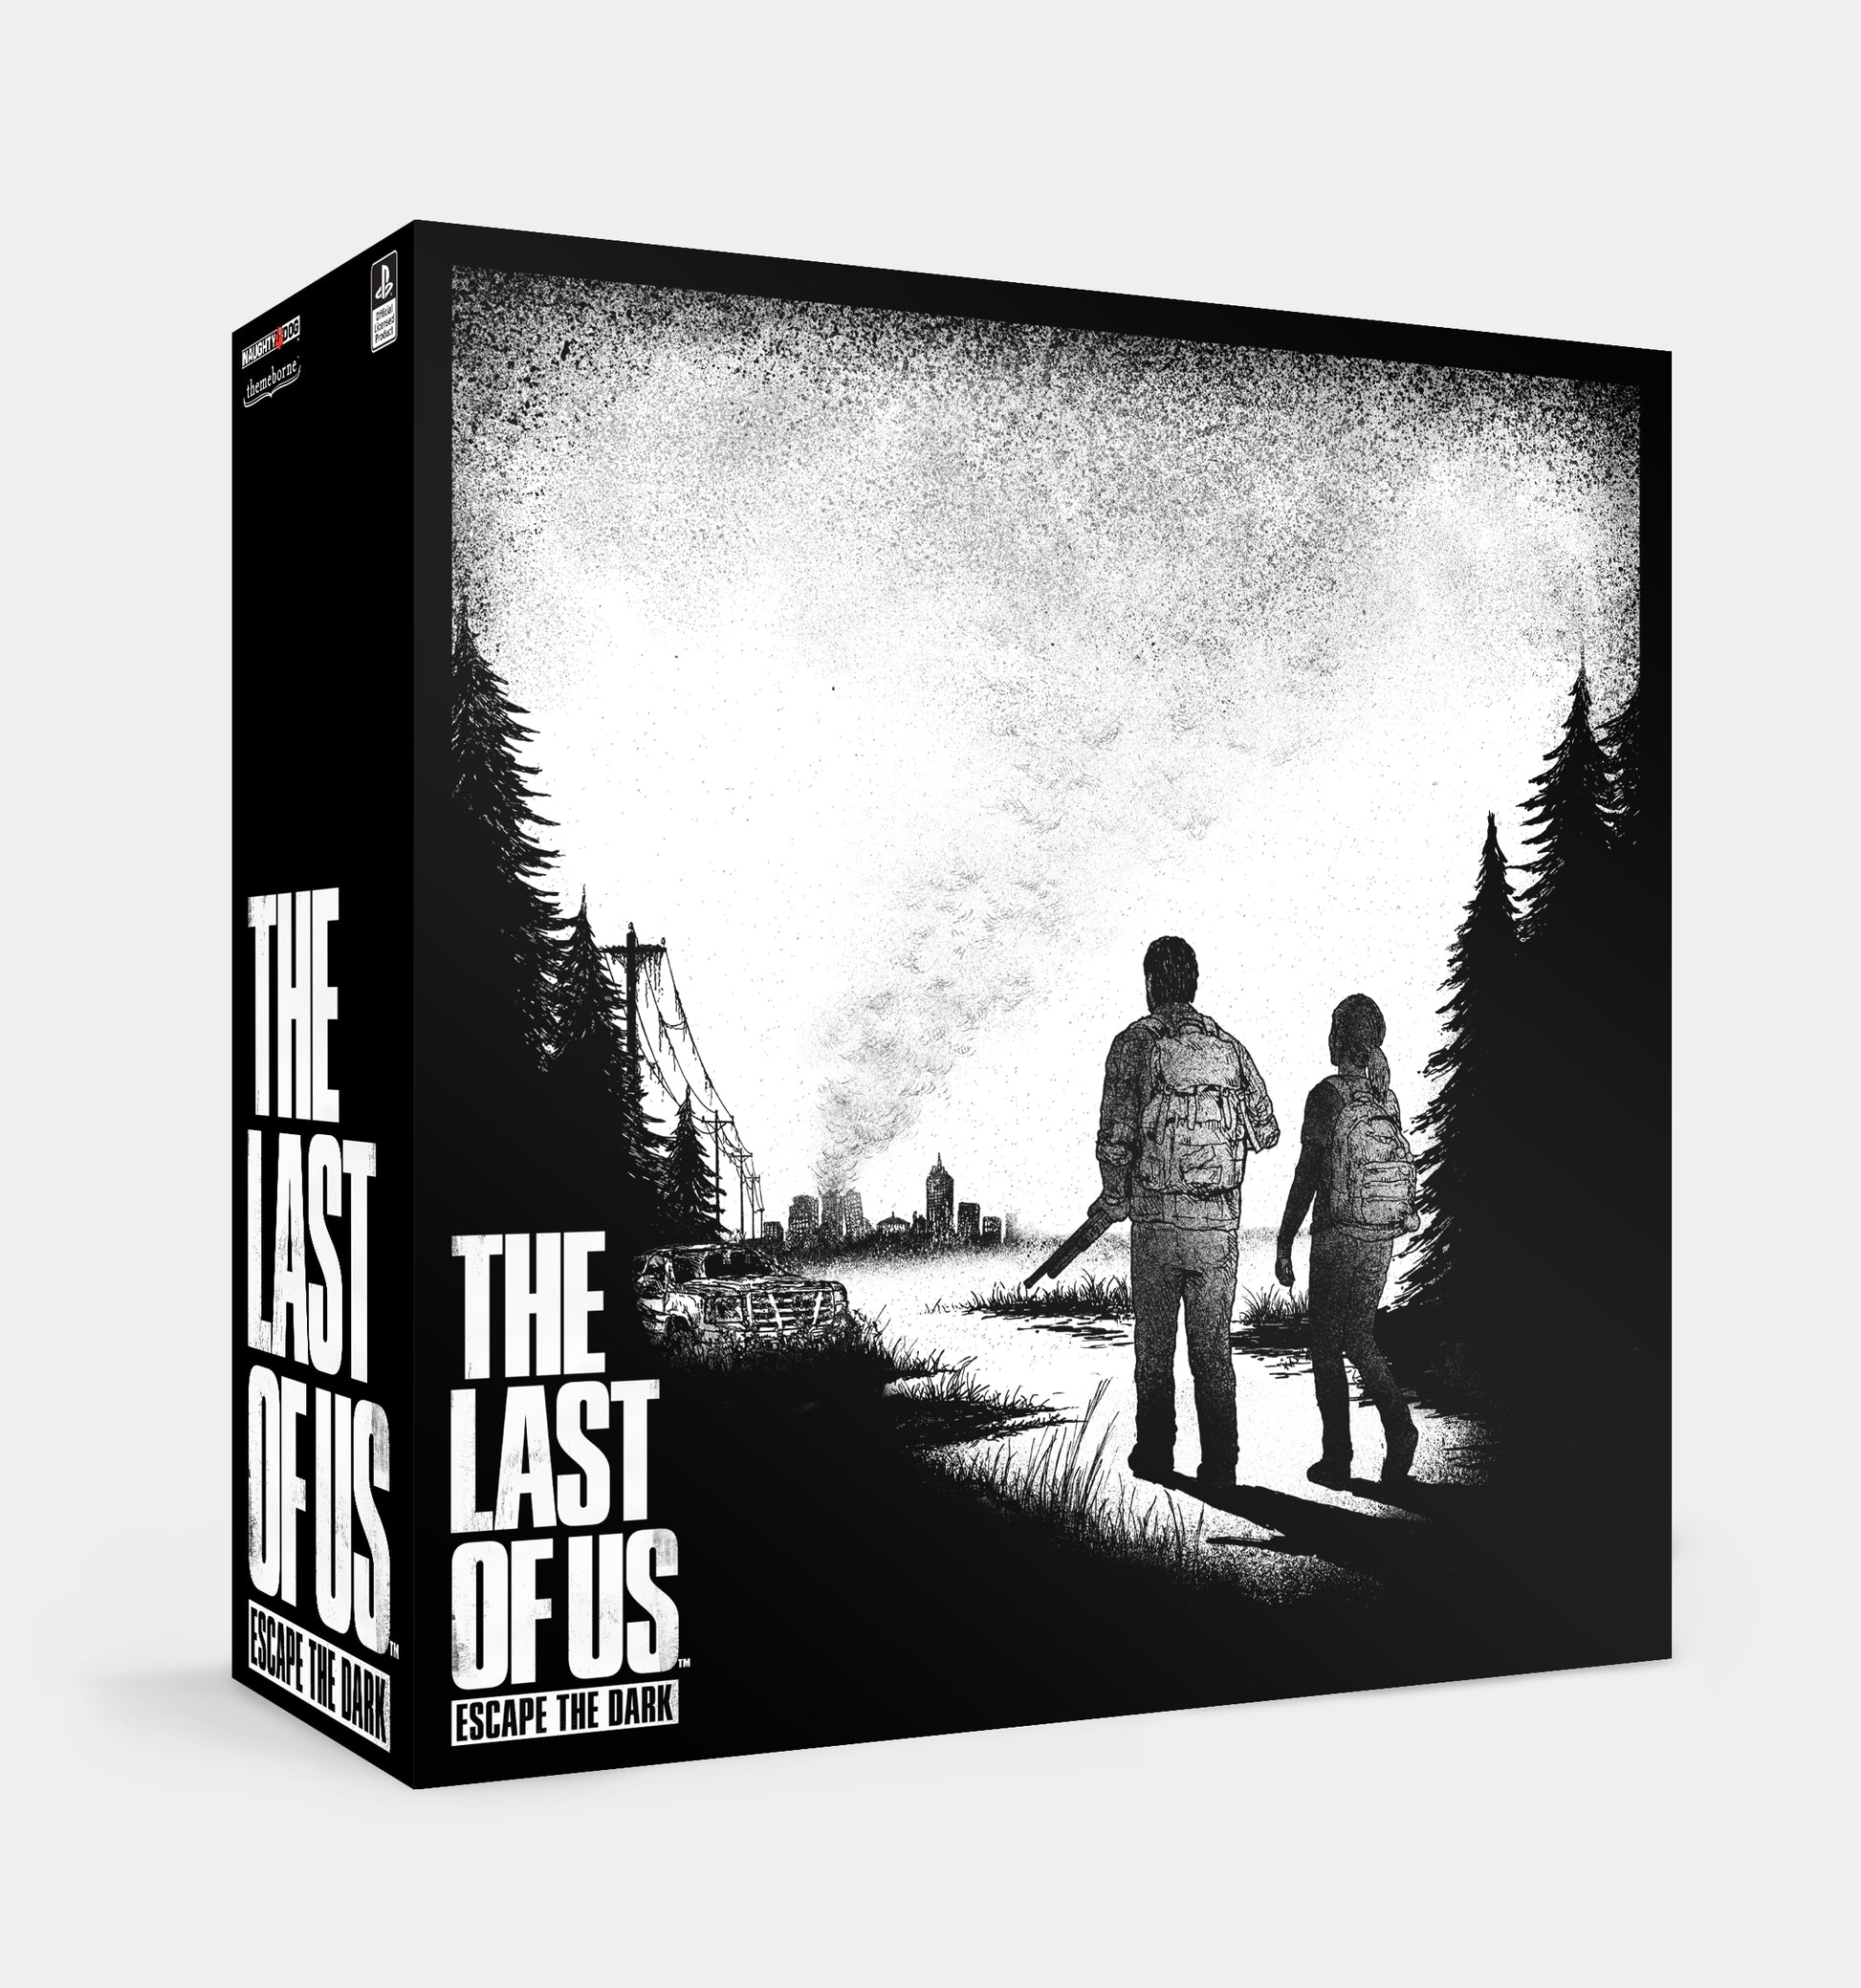 PRE-ORDER - The Last of Us: Escape the Dark – Themeborne Ltd